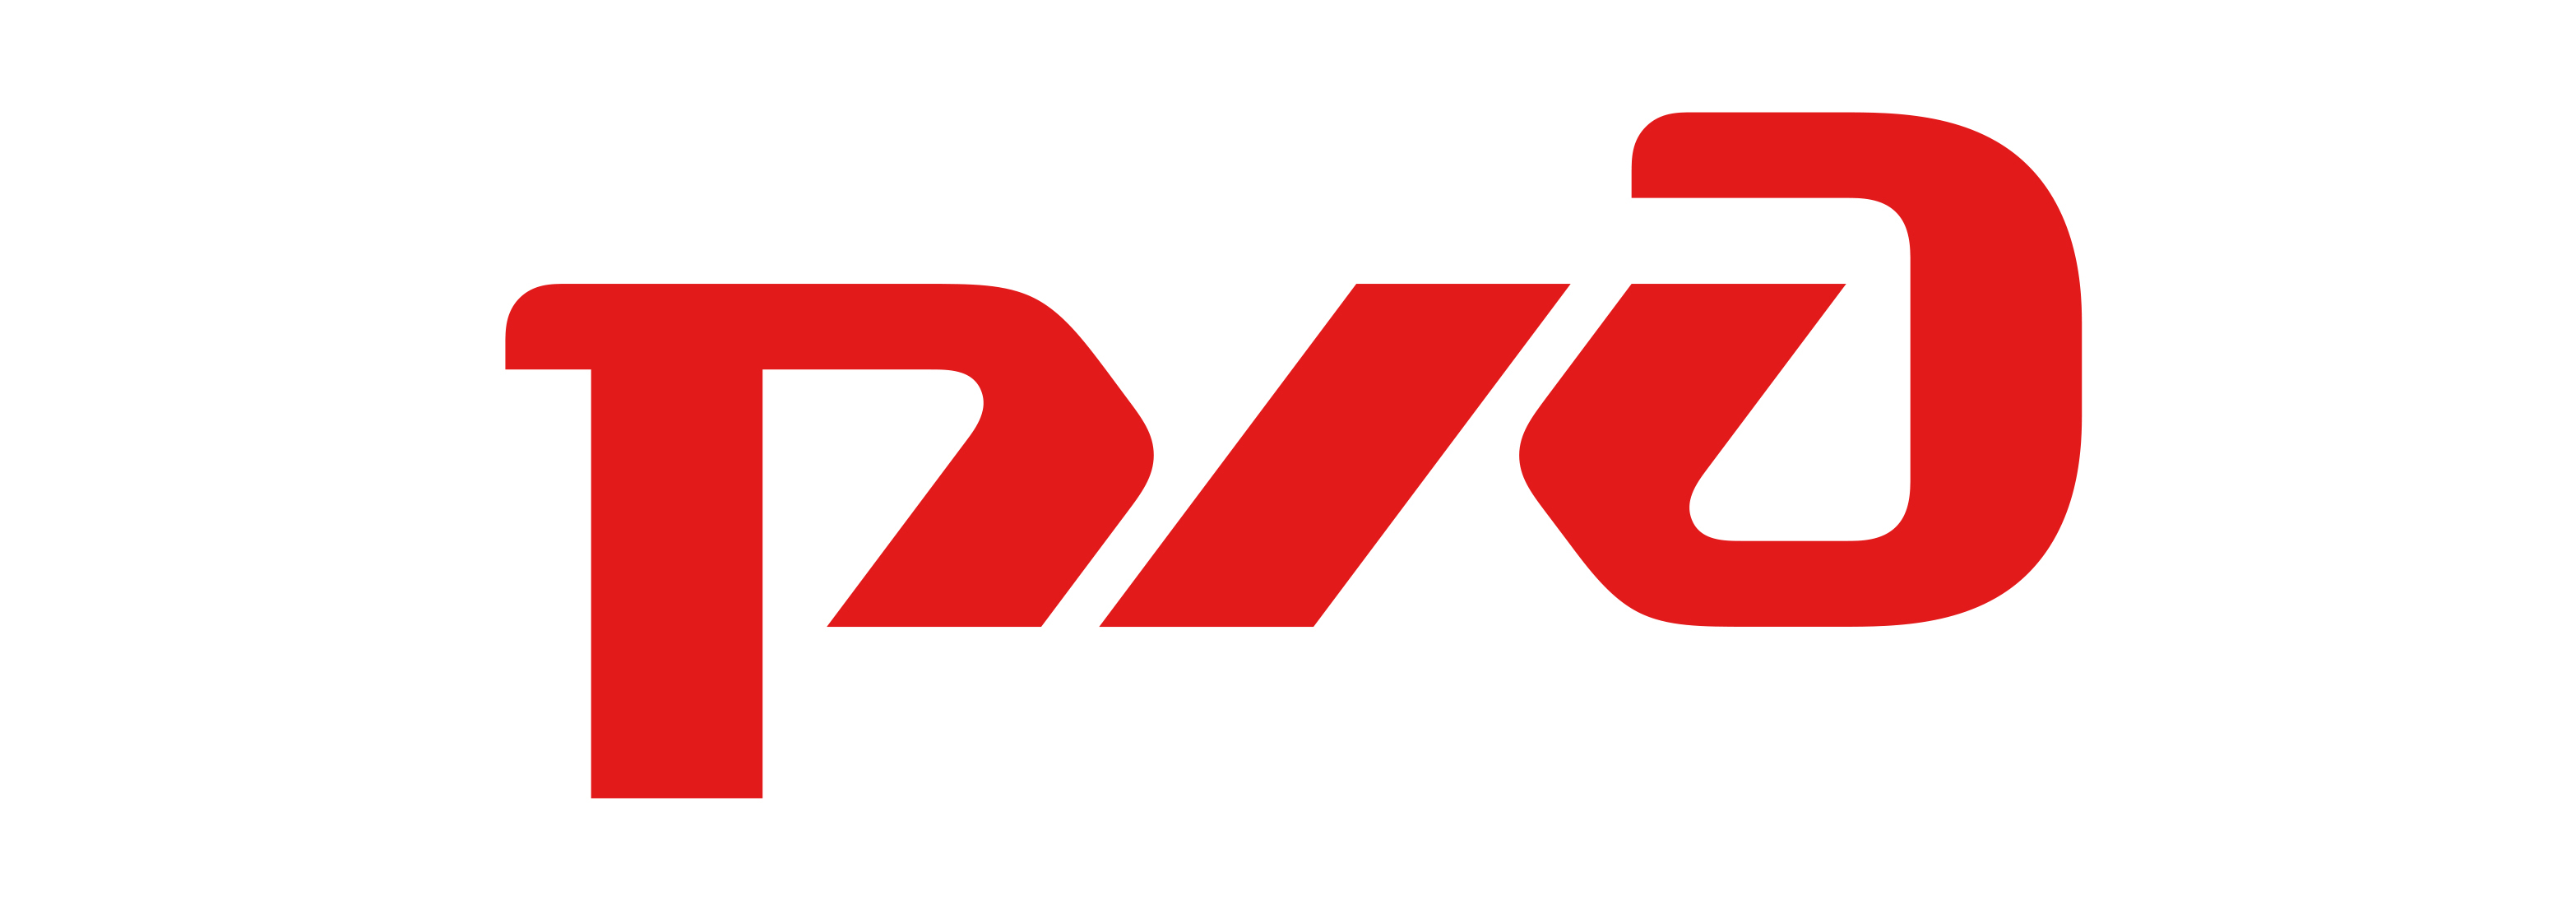 РЖД логотип белый